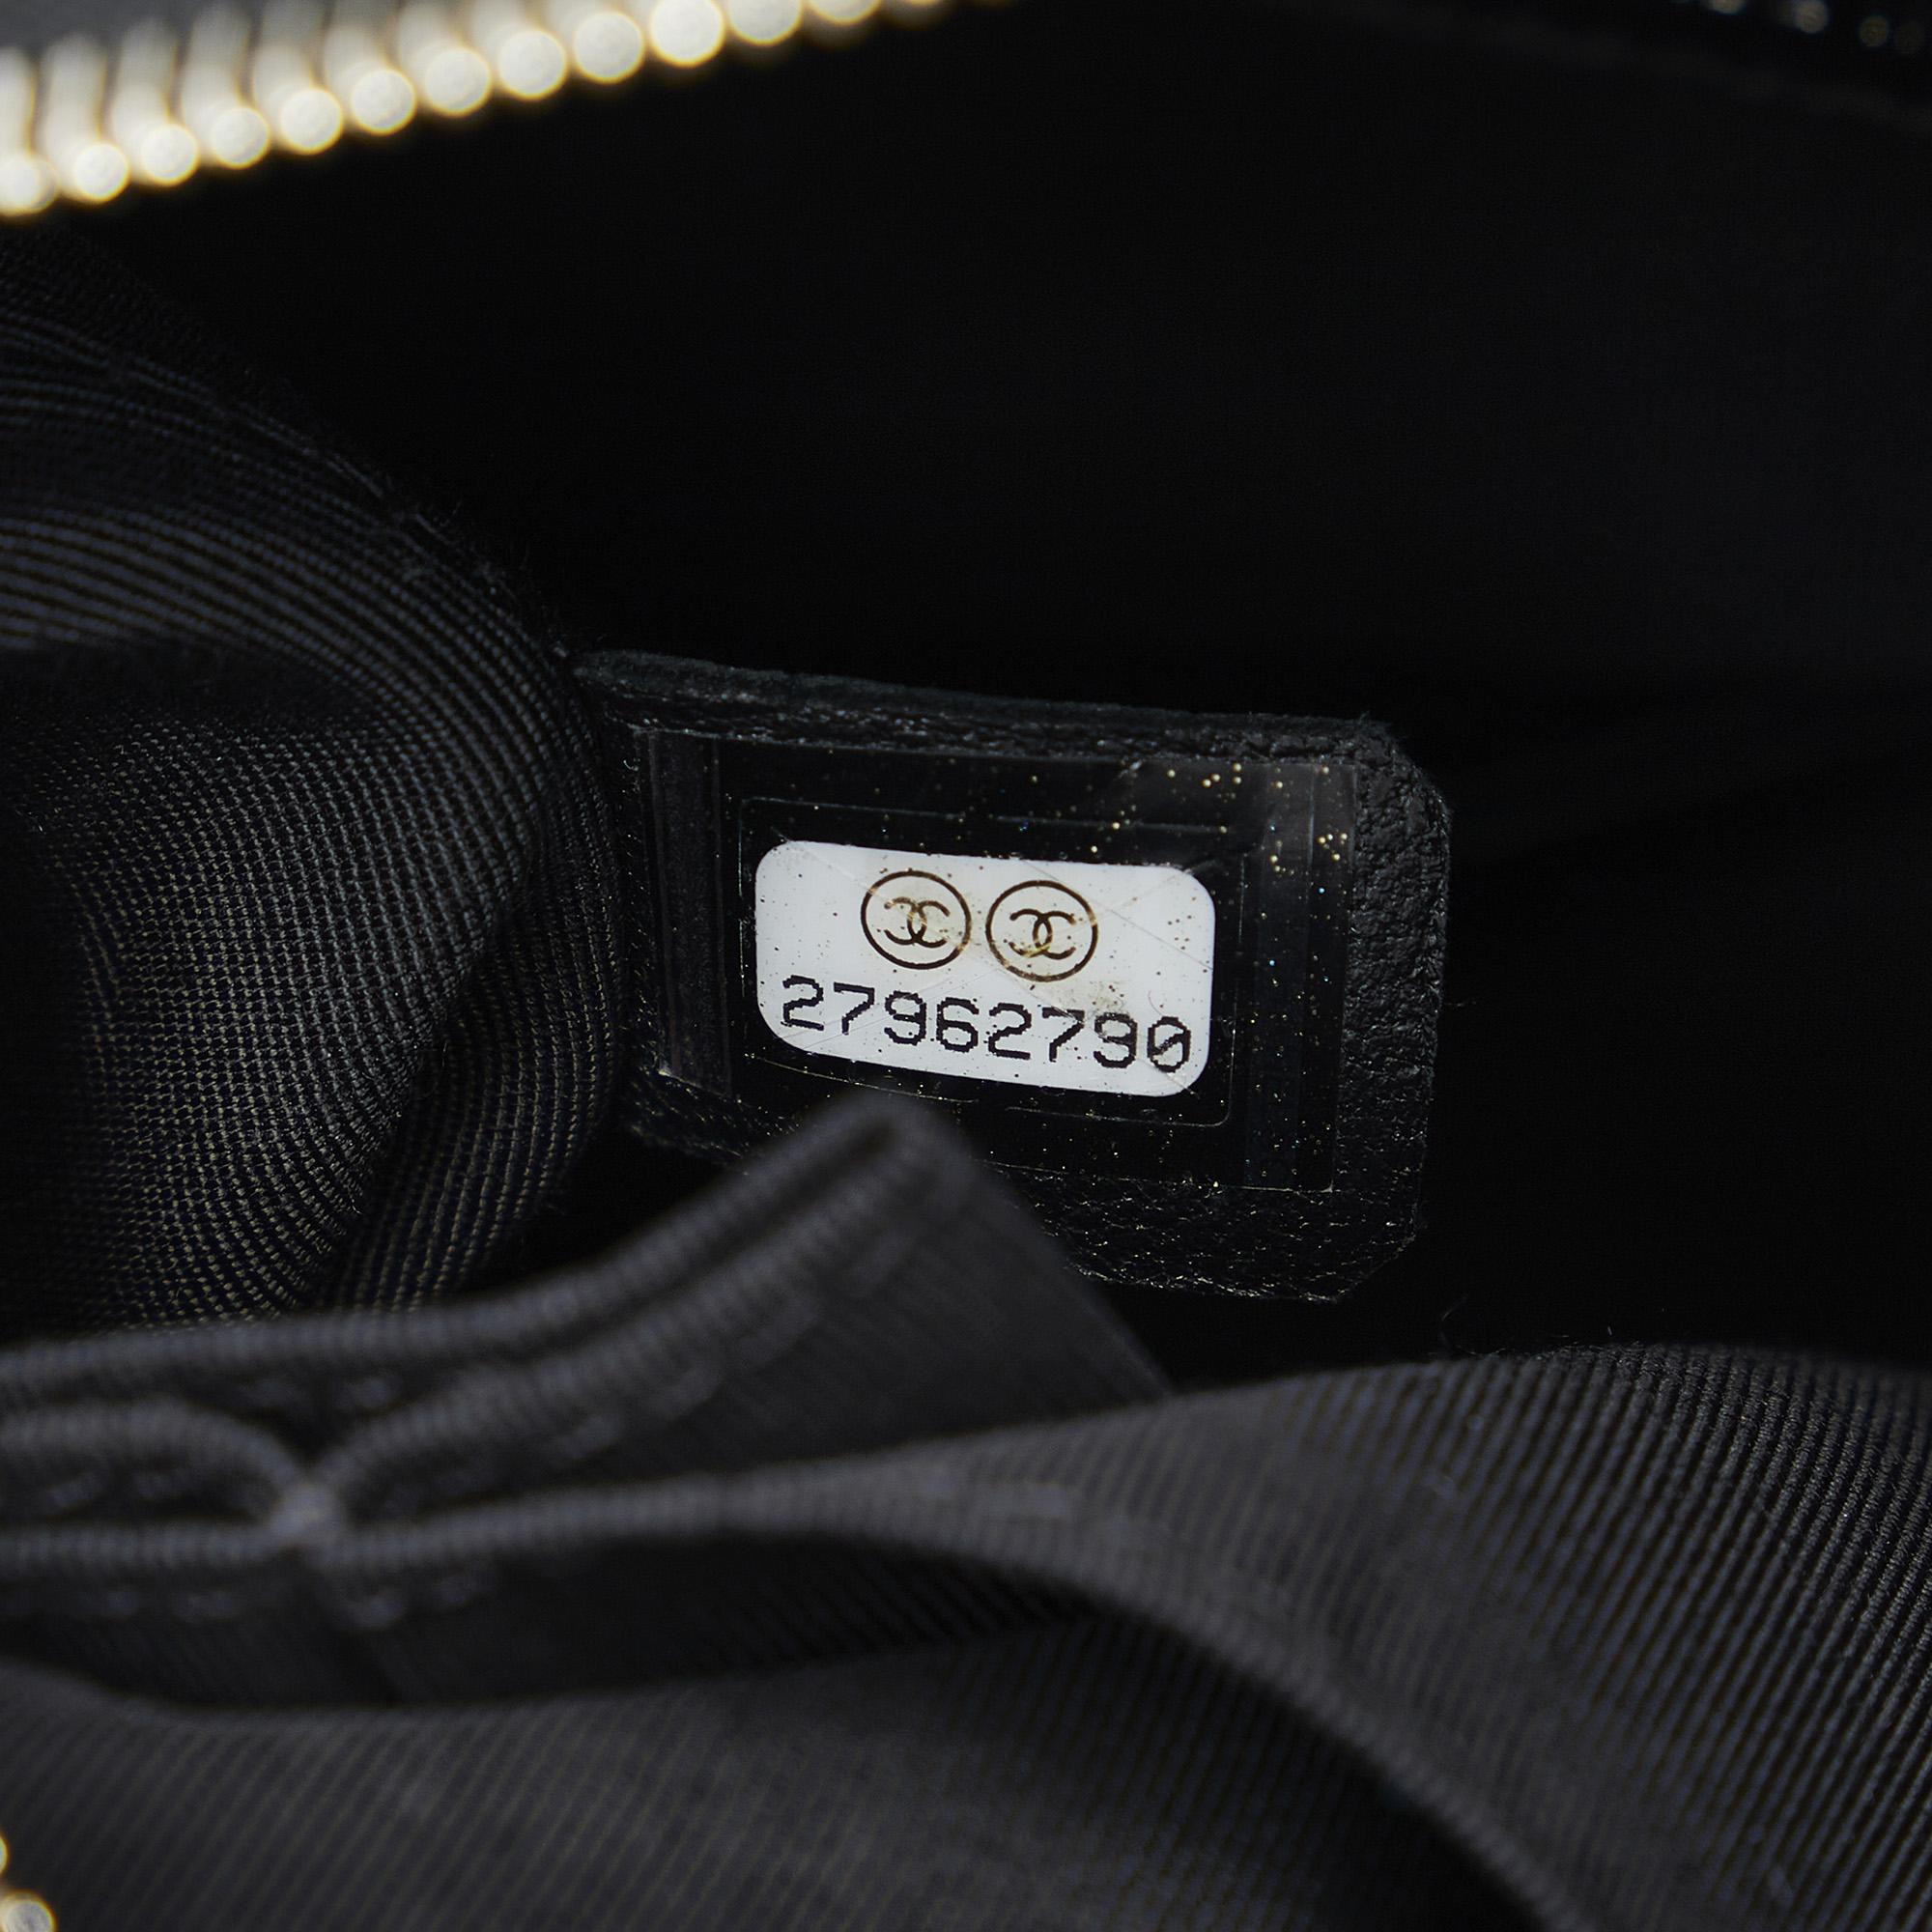 Chanel Black Gabrielle Shoulder Bag